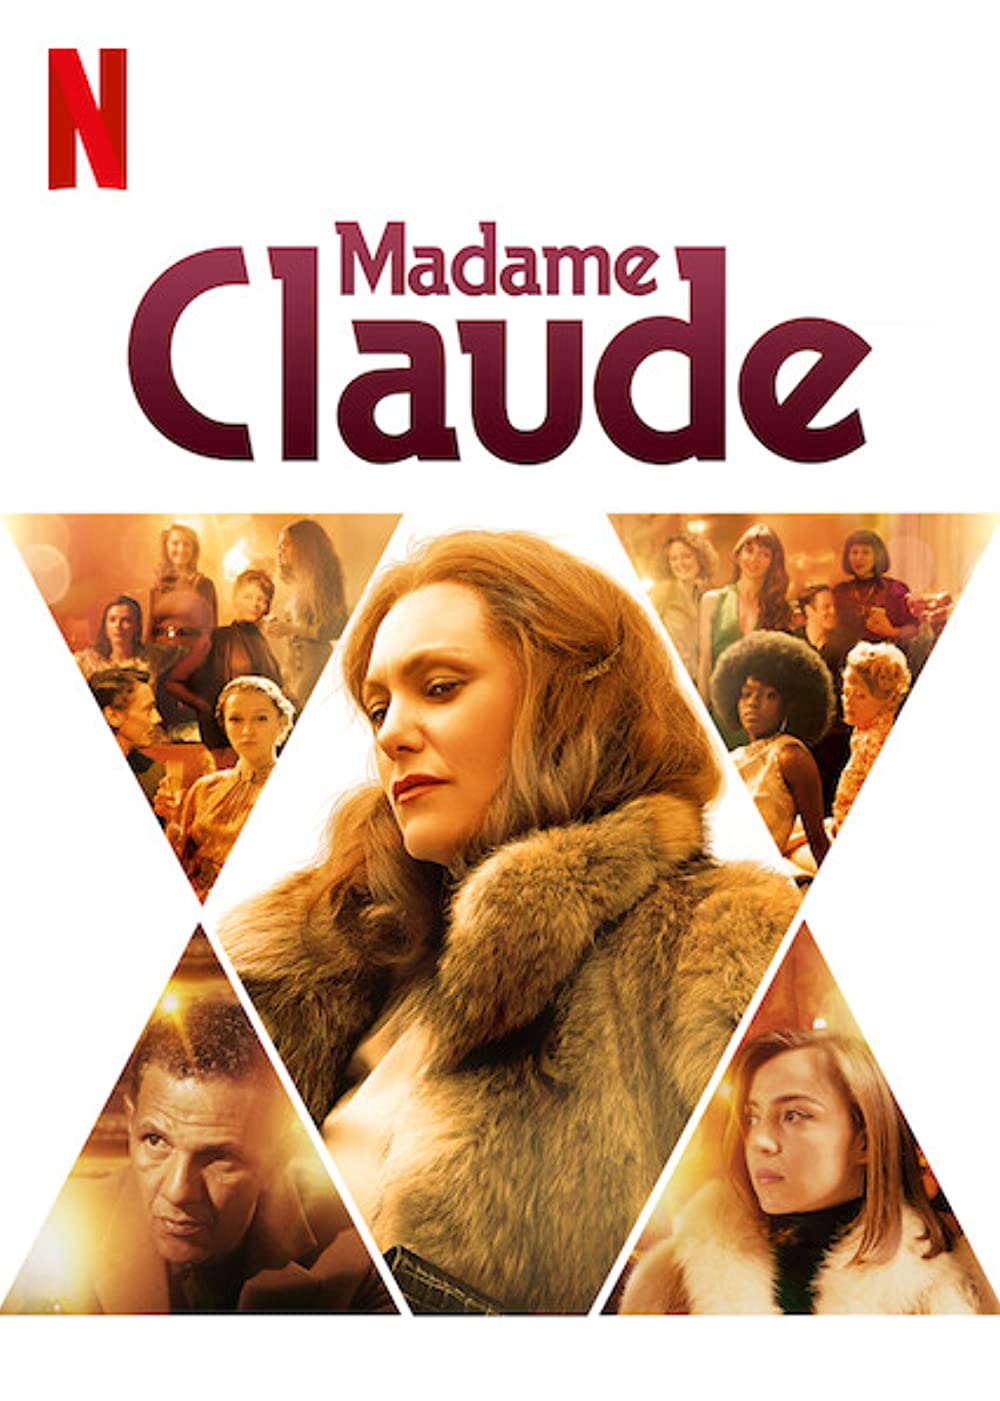 Filmbeschreibung zu Madame Claude